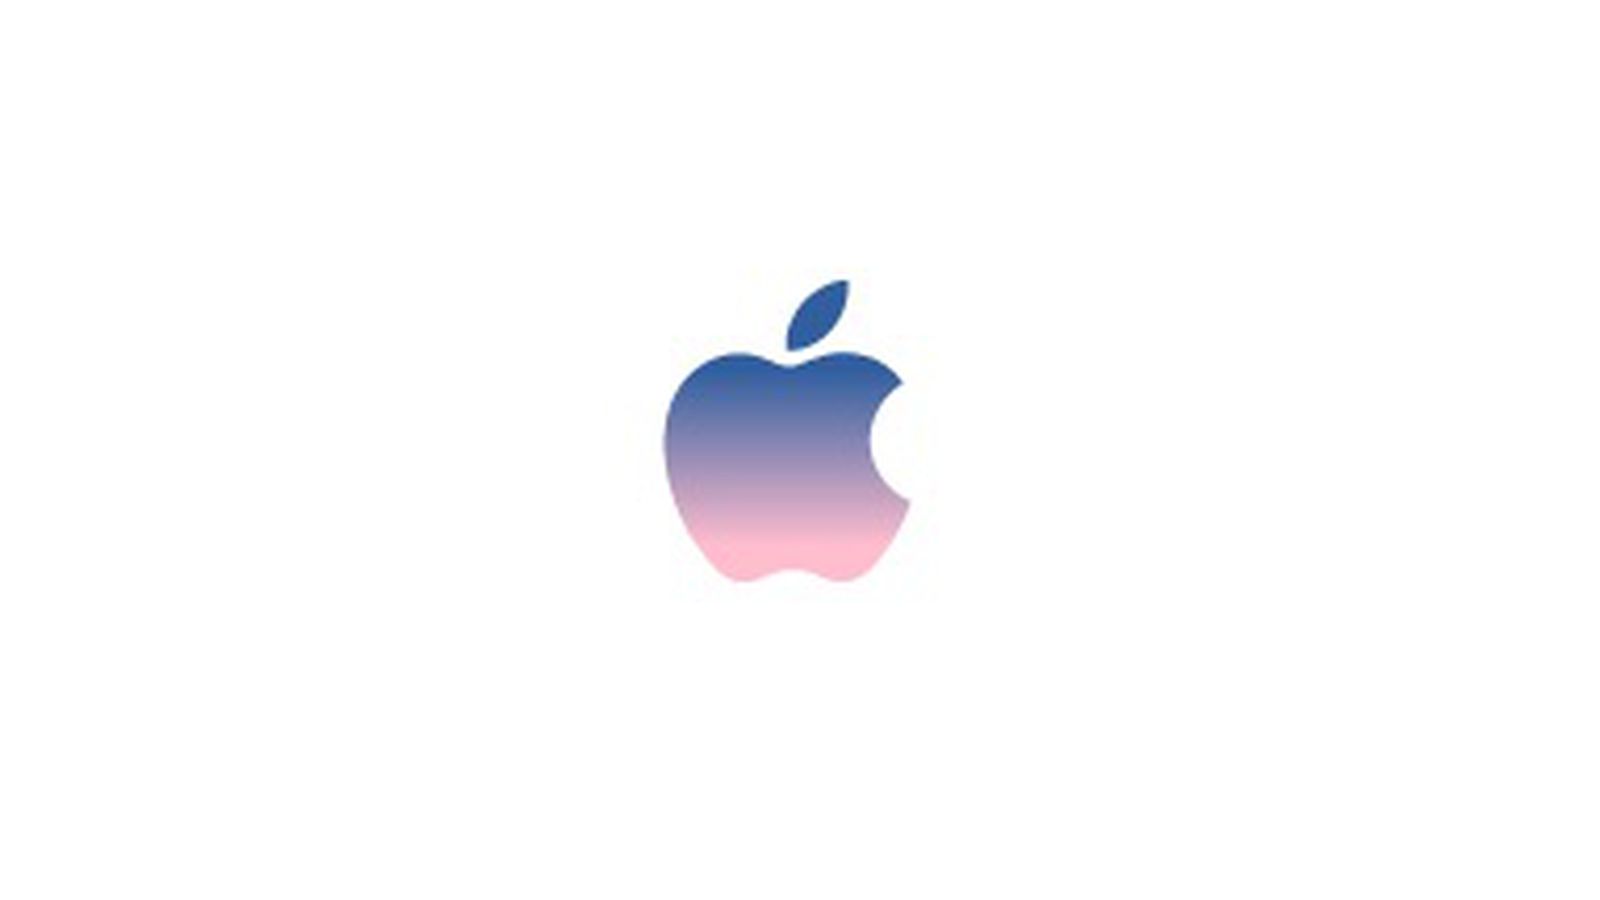 Twitter Hashflag for September 14 Apple Event Goes Live - MacRumors